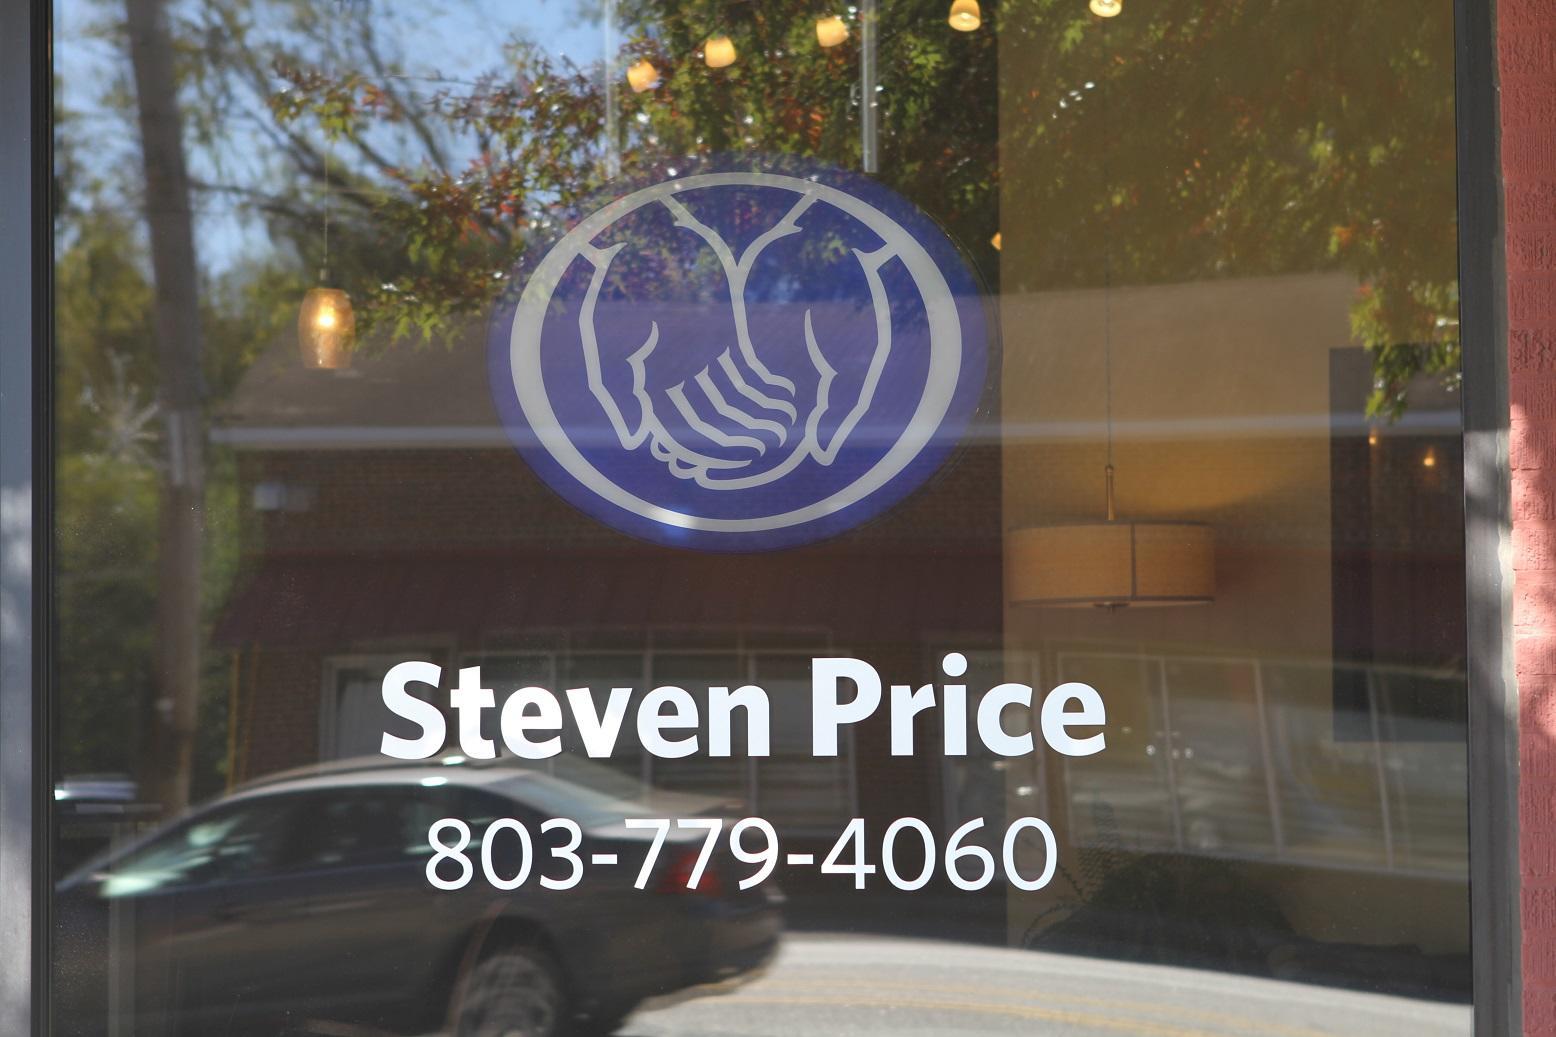 Steven Price Agency: Allstate Insurance Photo